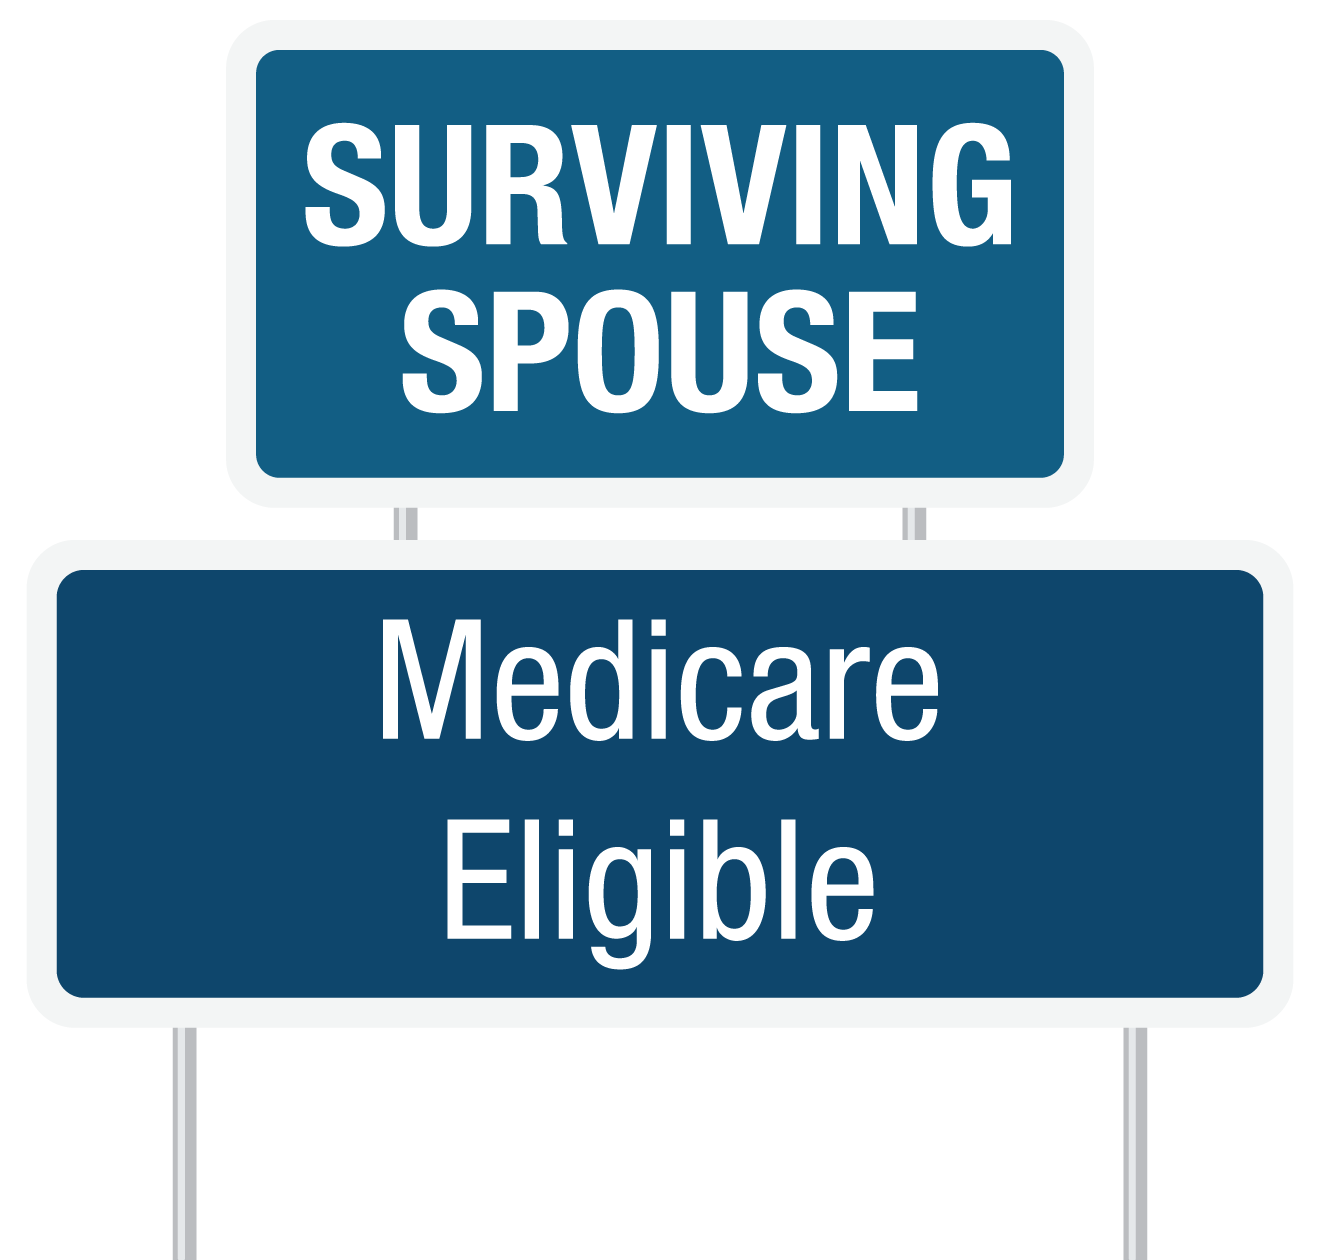 Click for details plans on Surviving Spouse medicare plans